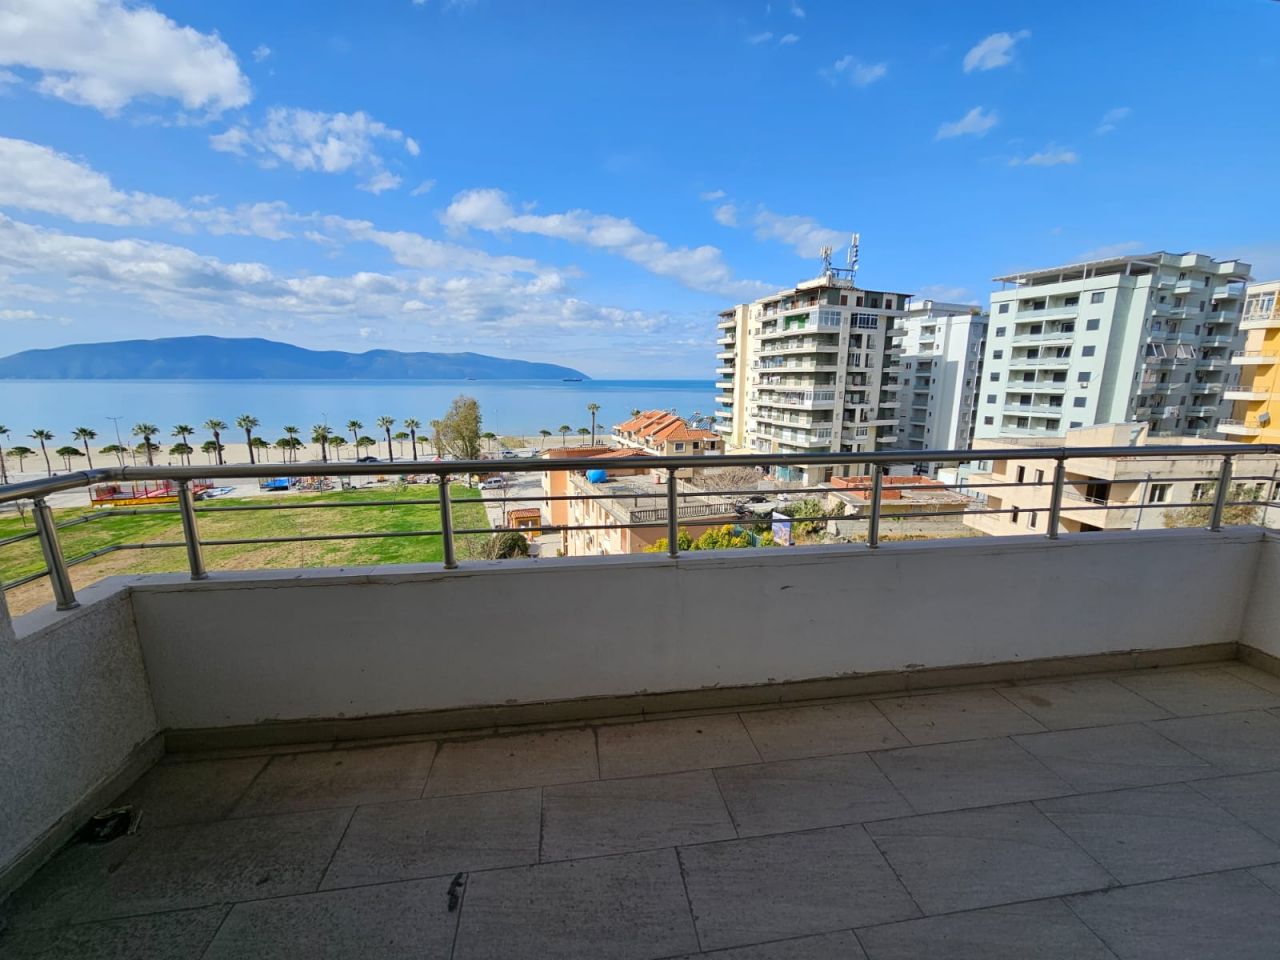 Apartament Per Shitje Ne Vlore Shqiperi, Ne Nje Zone Te Mire, Vetem Pak Hapa Larg Plazhit